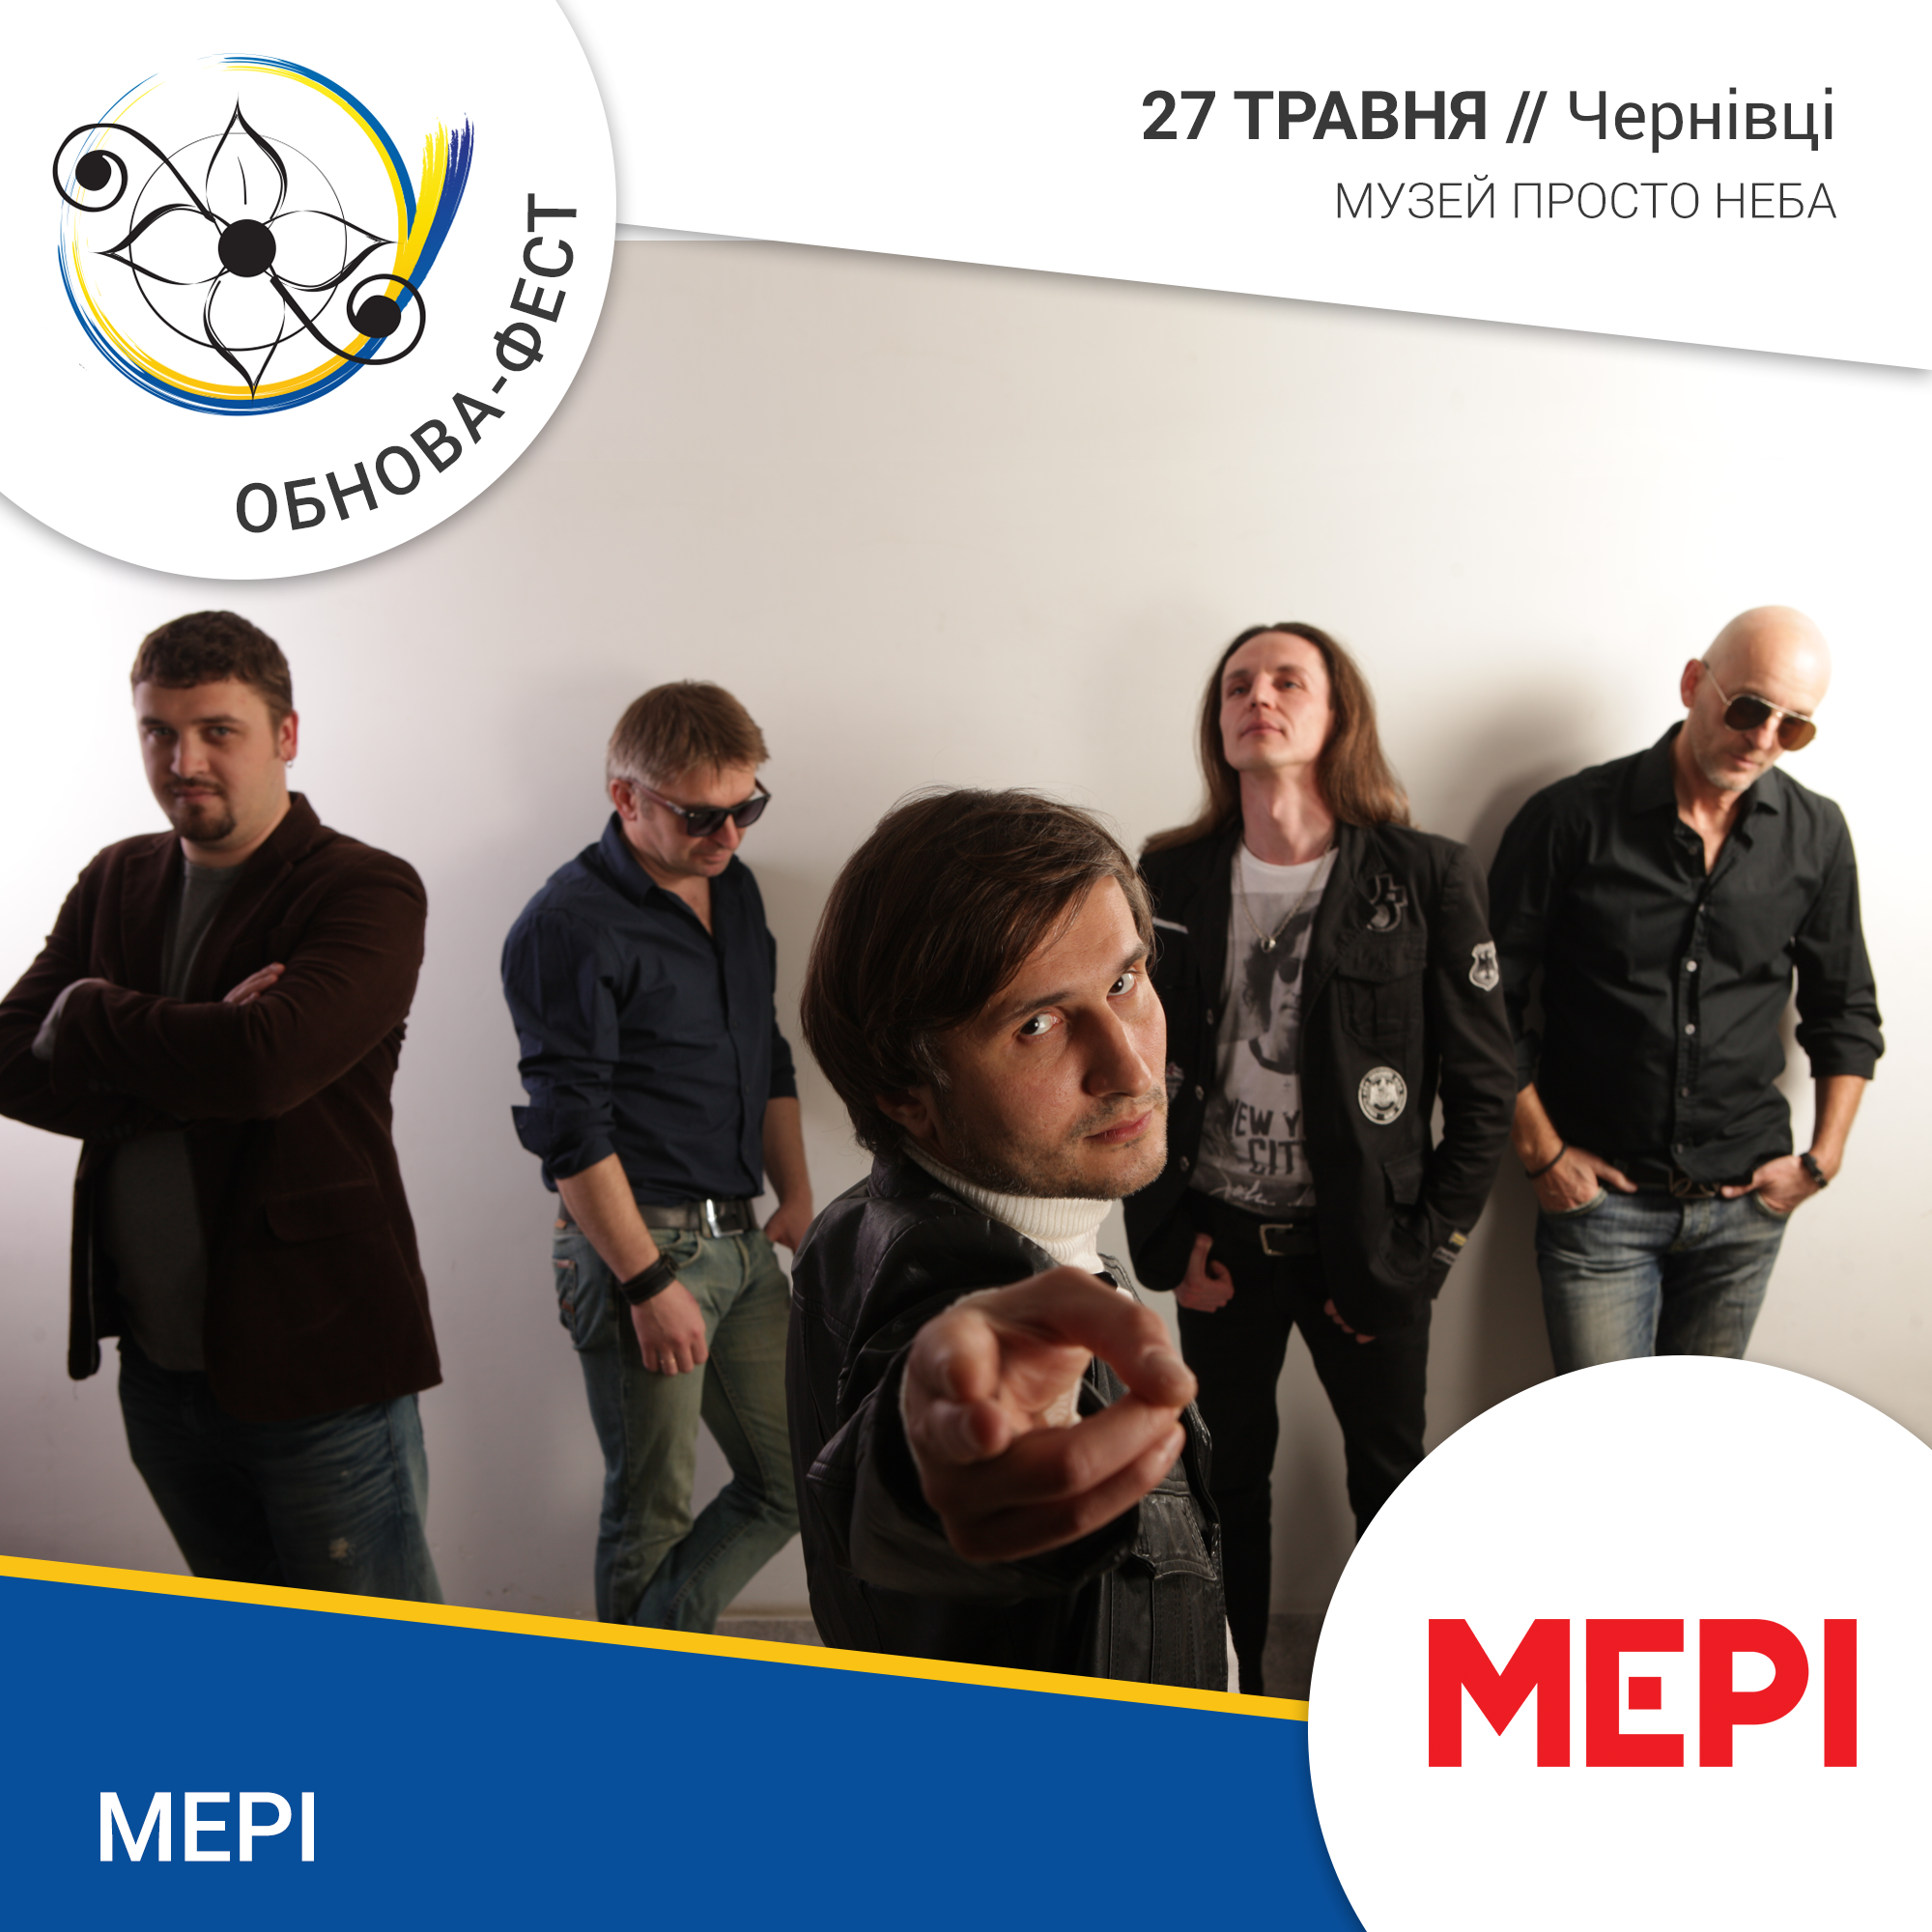 Представляємо одного із хедлайнерів ювілейного "Обнова-фесту" - відомий український рок-гурт МЕРІ